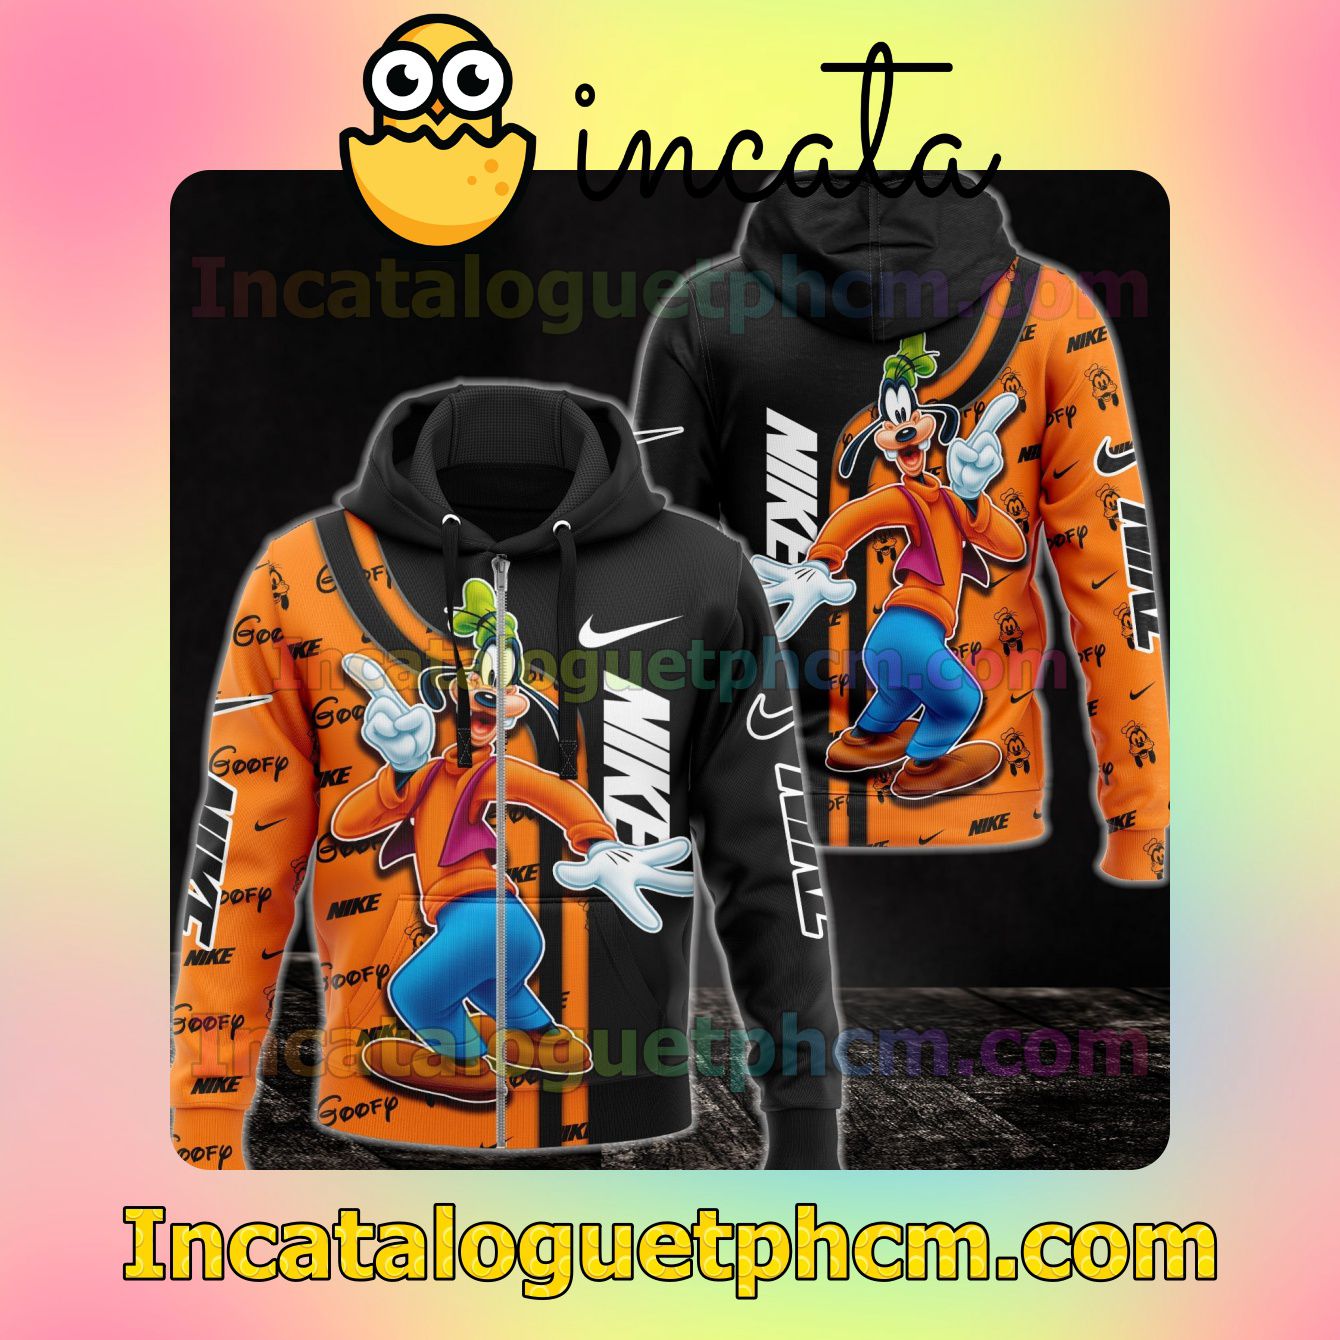 Nike With Goofy Black And Orange Long Sleeve Jacket Mens Hoodie